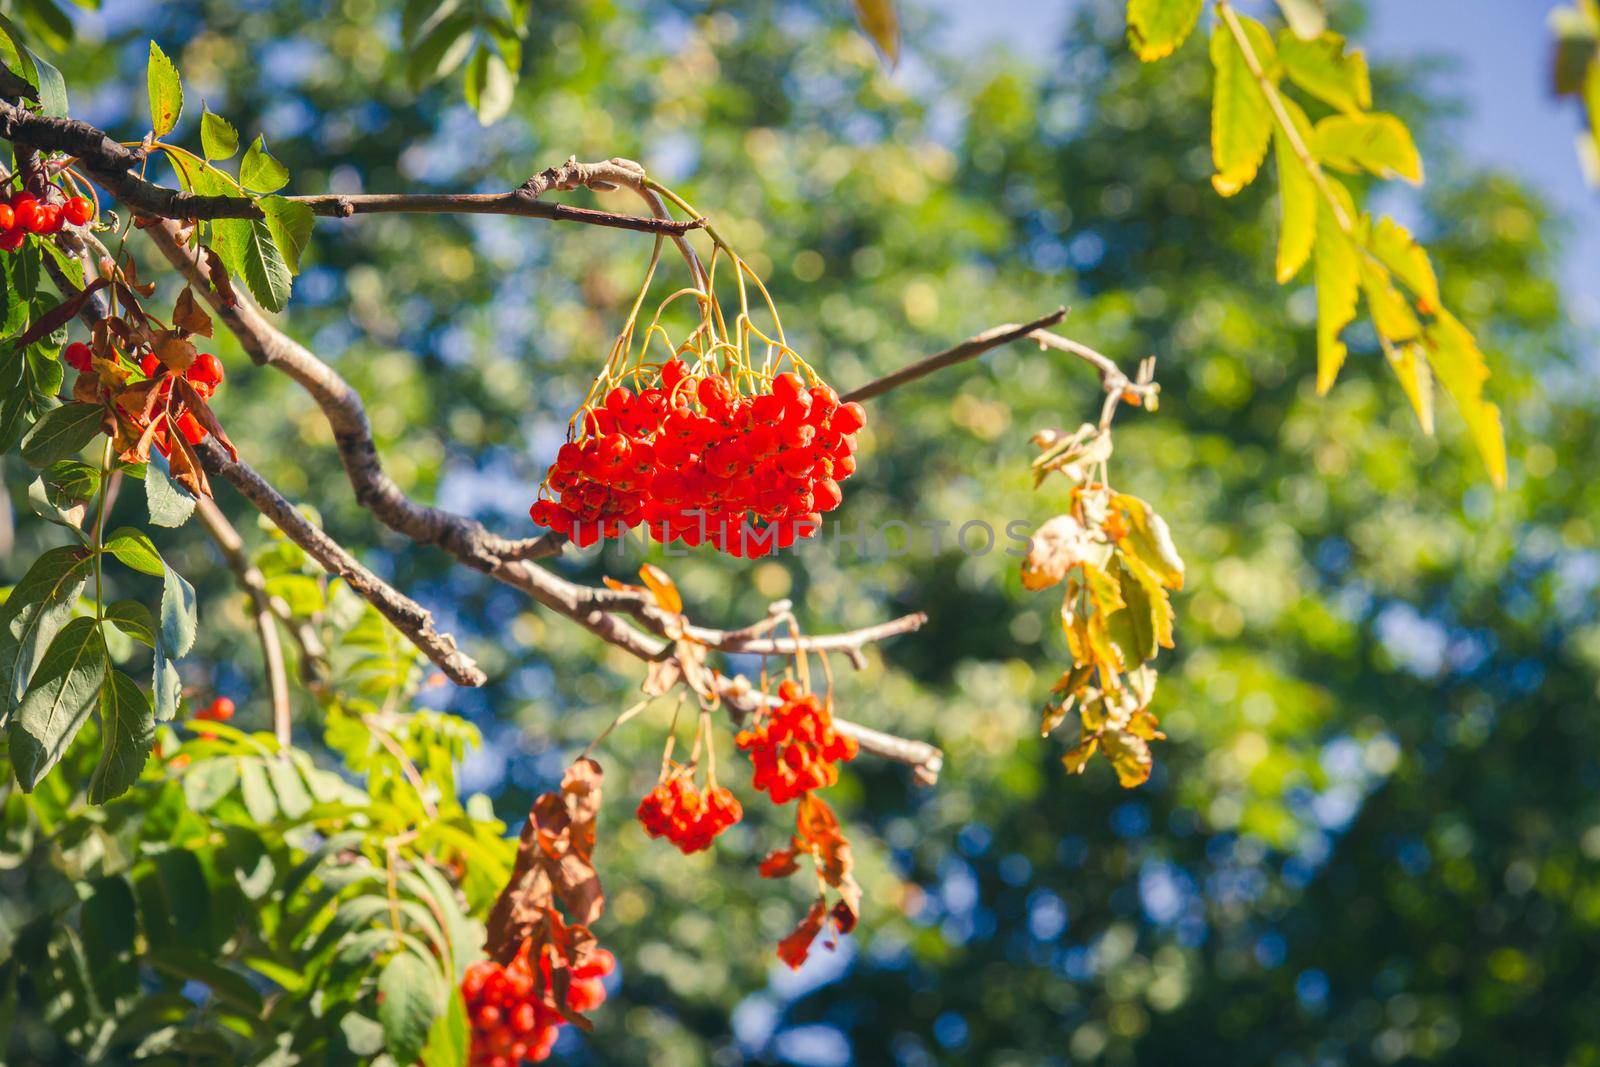 Red berries of rowan. Ripe orange rowan berries close-up grow in clusters on branches.